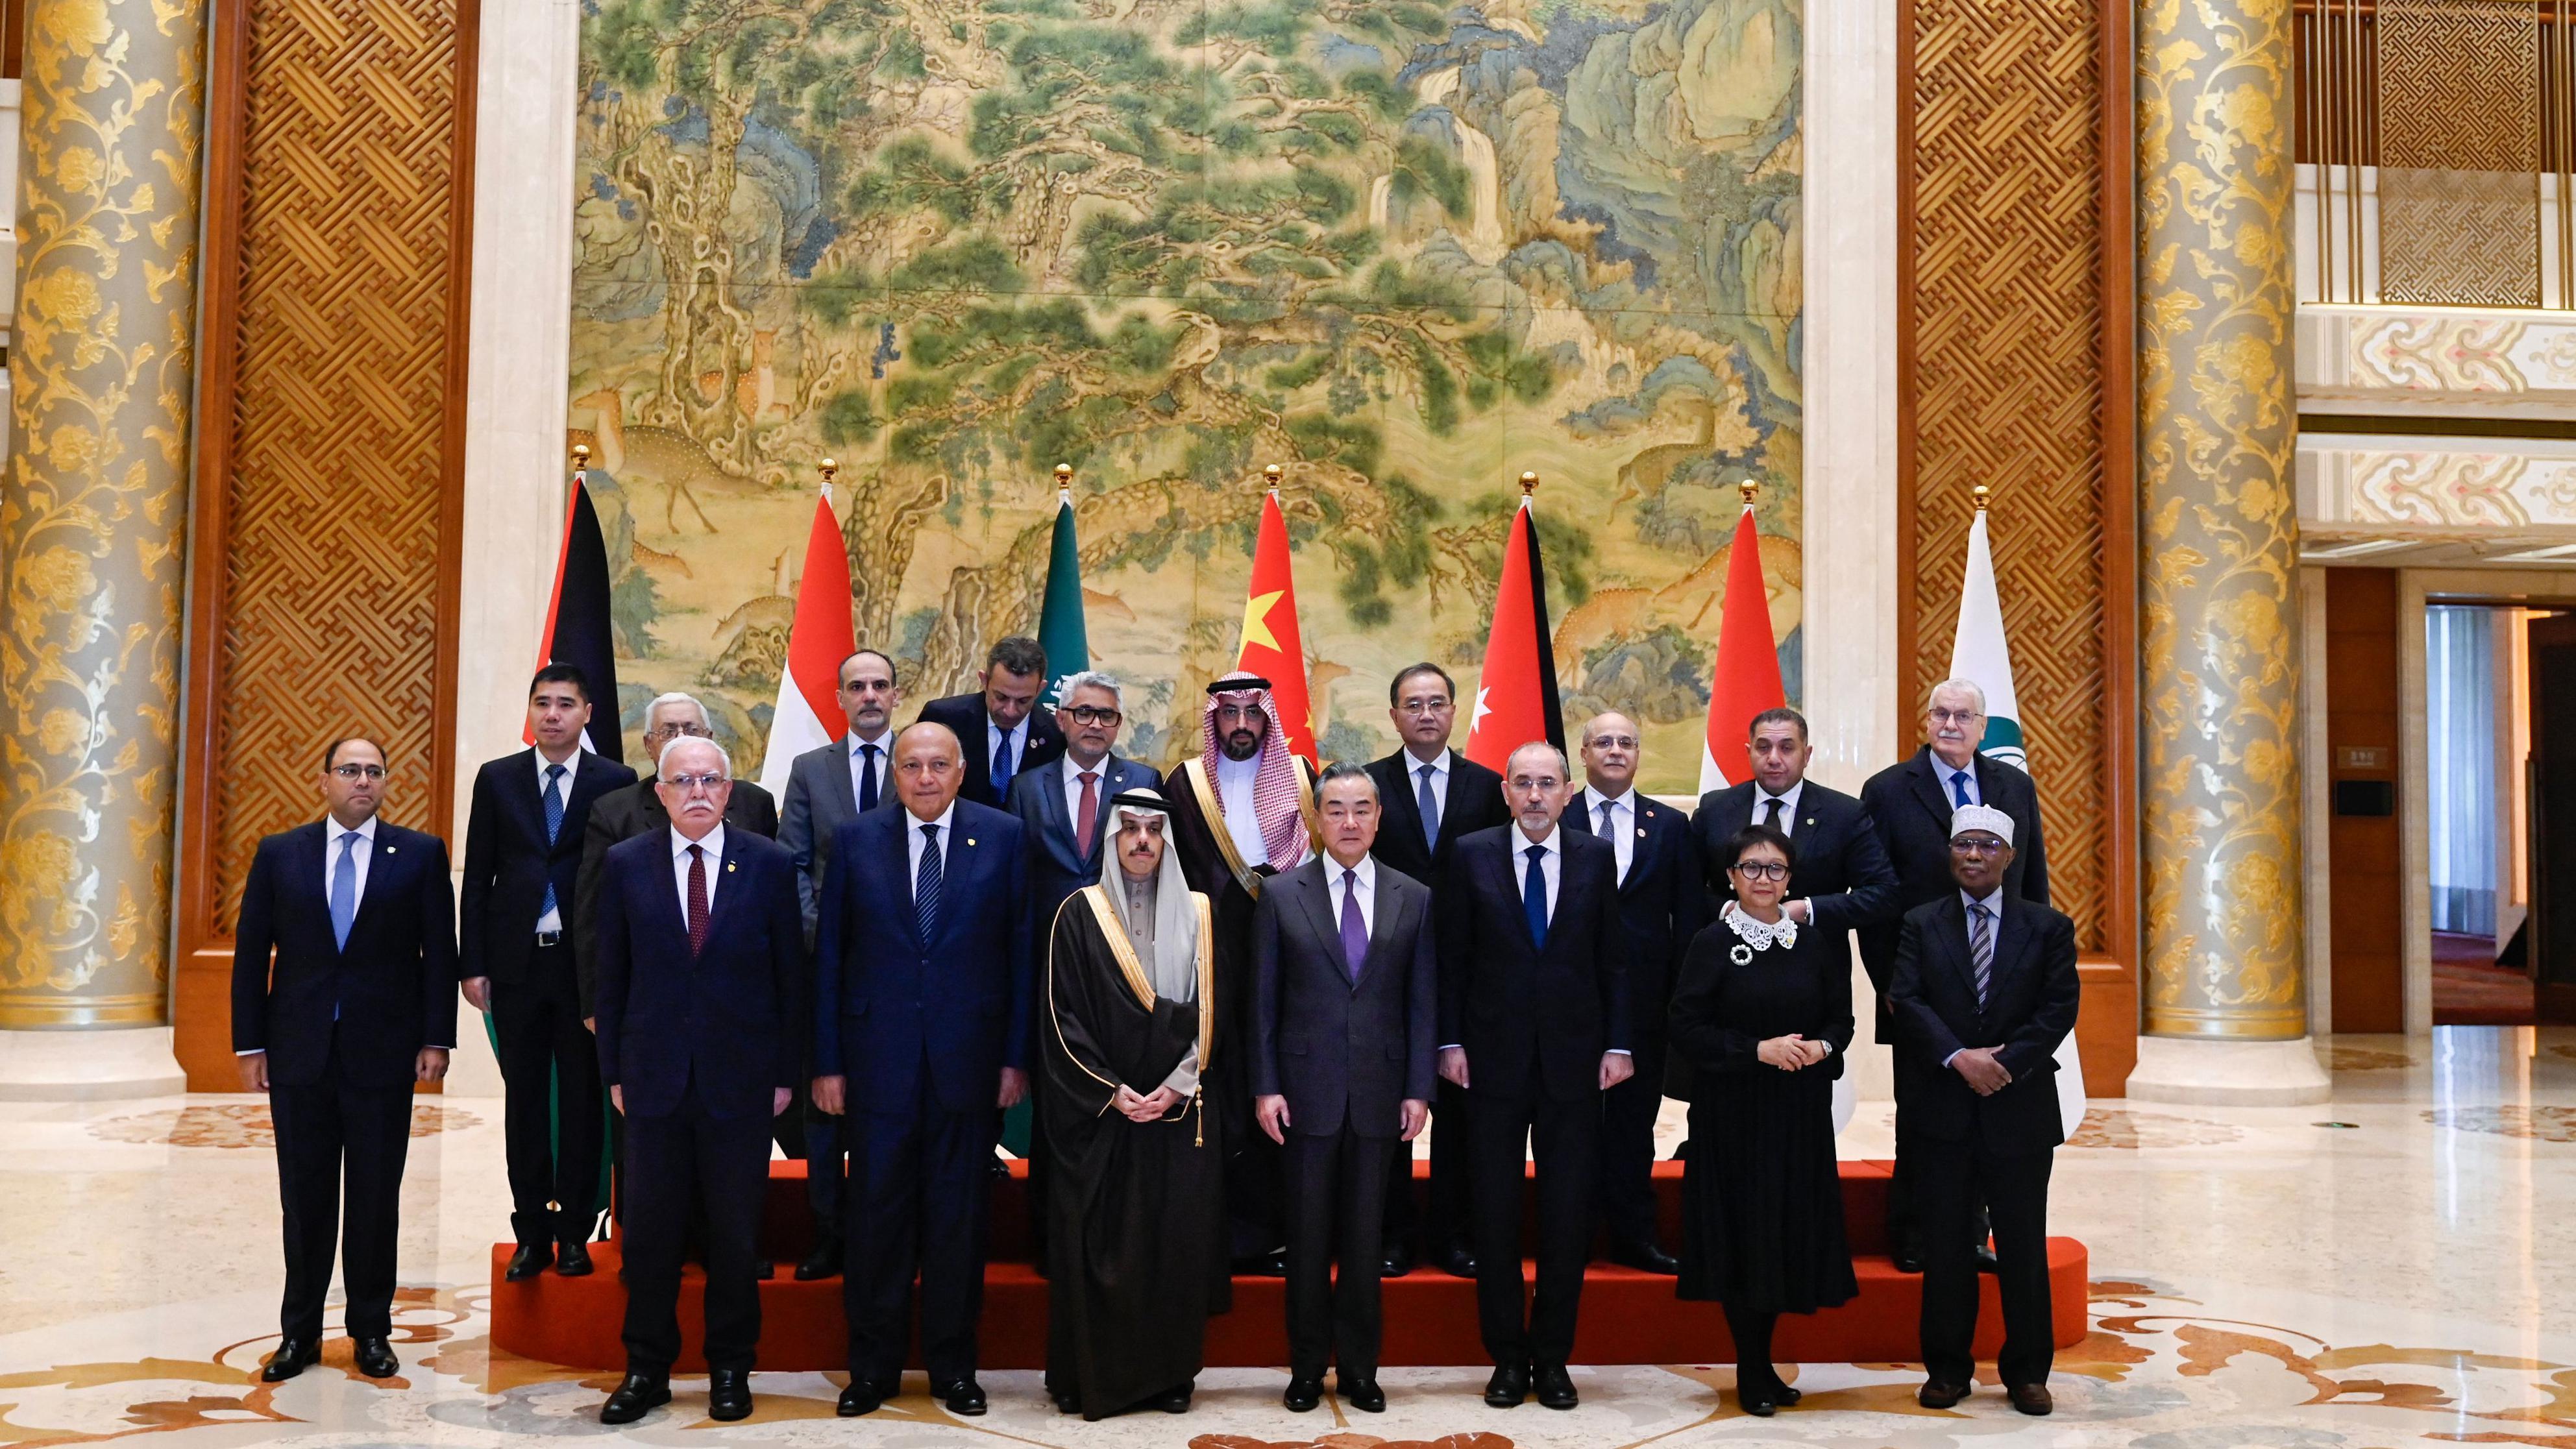 Getty Images | وزير الخارجية الصيني مع وفد من الدبلوماسيين من دول عربية وإسلامية (20 نوفمبر/ تشرين الثاني)